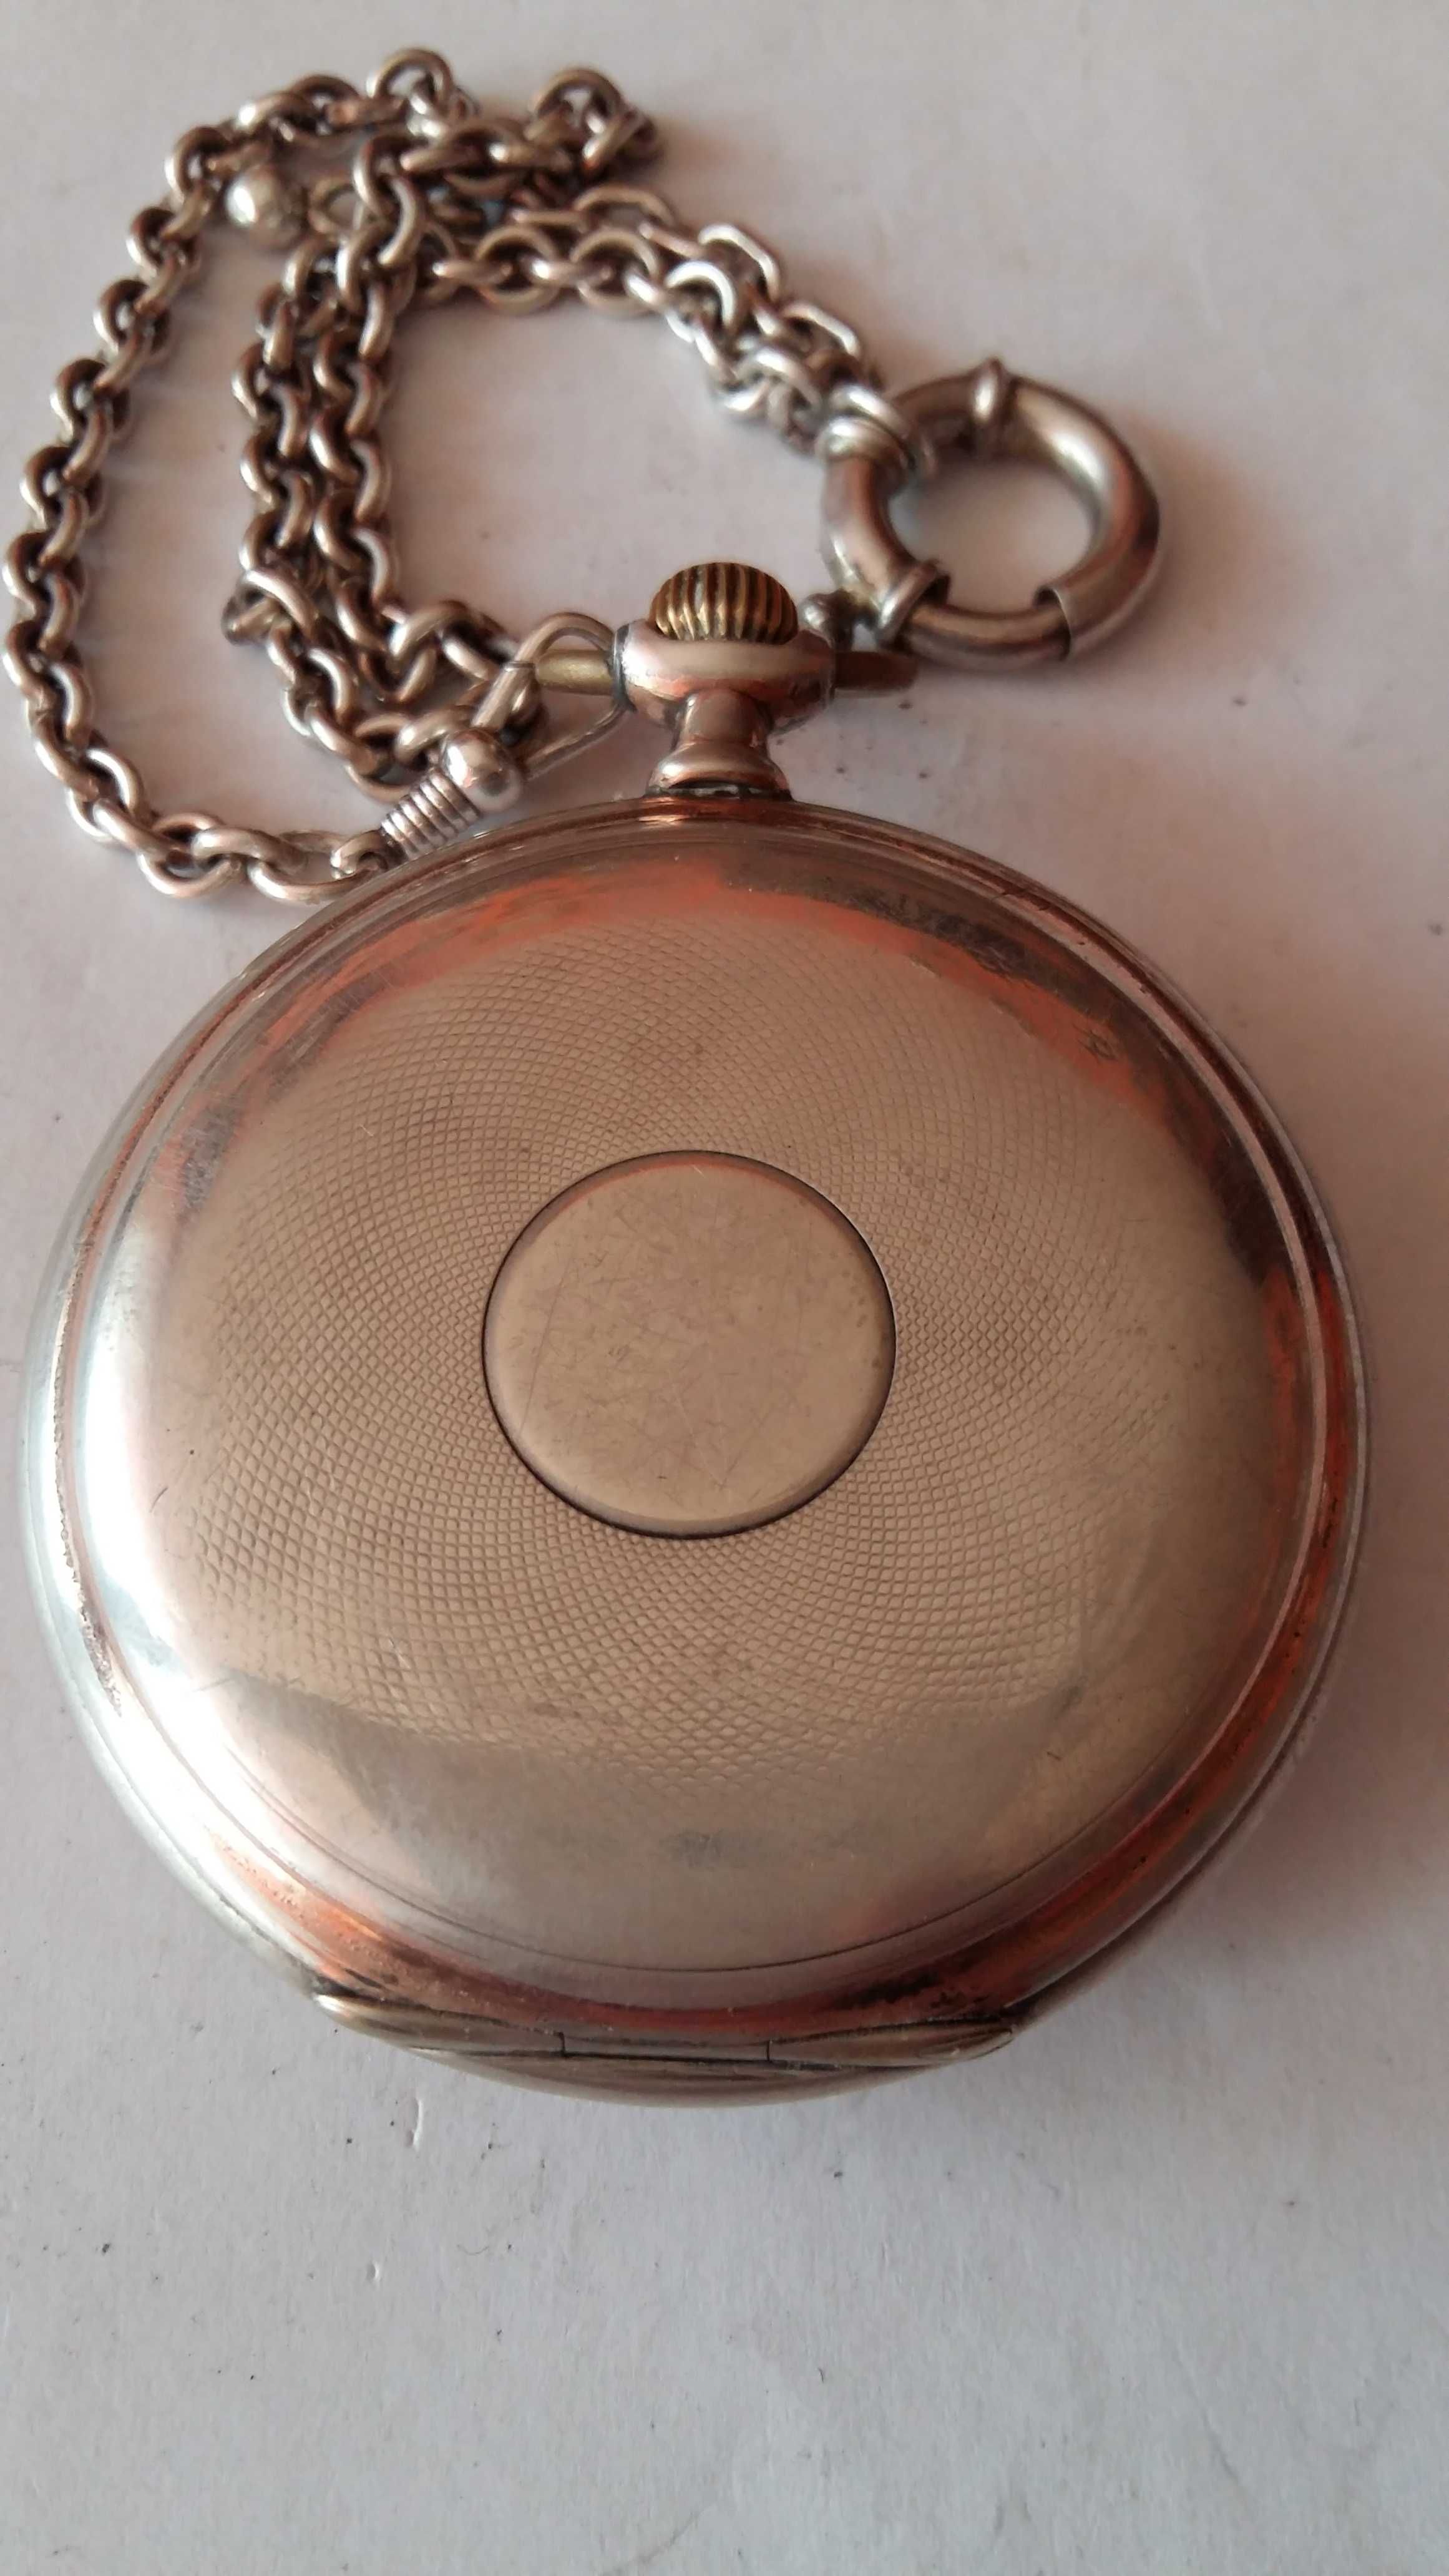 Zegarek kieszonkowy srebro antyk Ancre De Precision z dewizką Rarytas